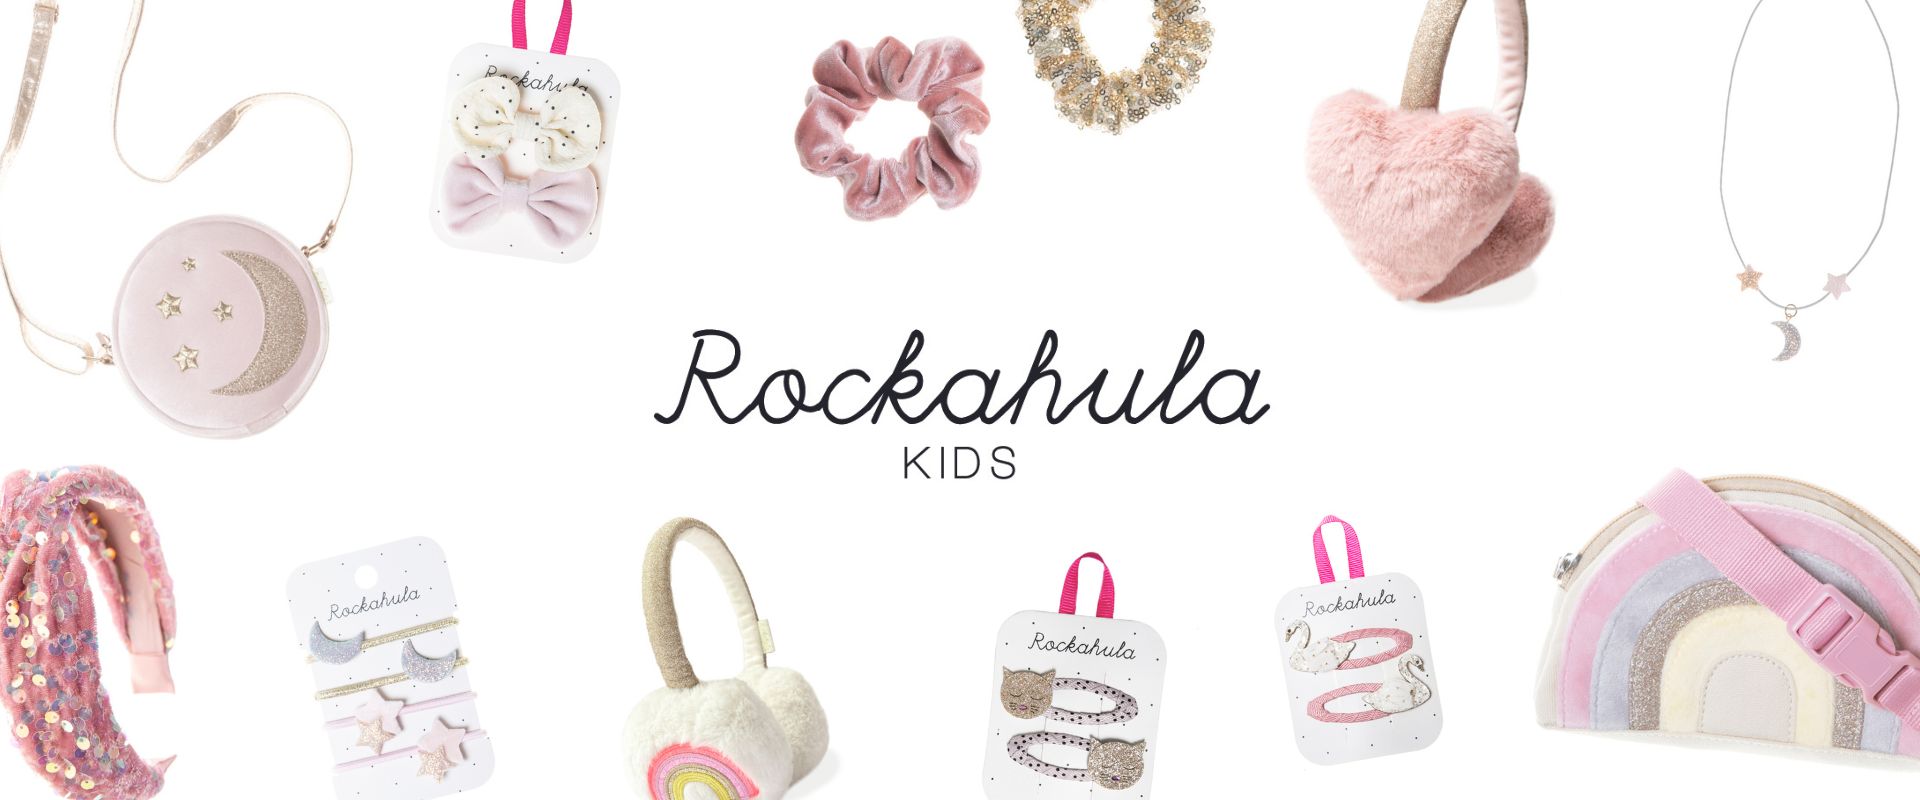 Rockahula Kids modni otroški dodatki: špangice, elastike za lase, ogrlice, otroške torbice, scrunchie, sponke in obroči!